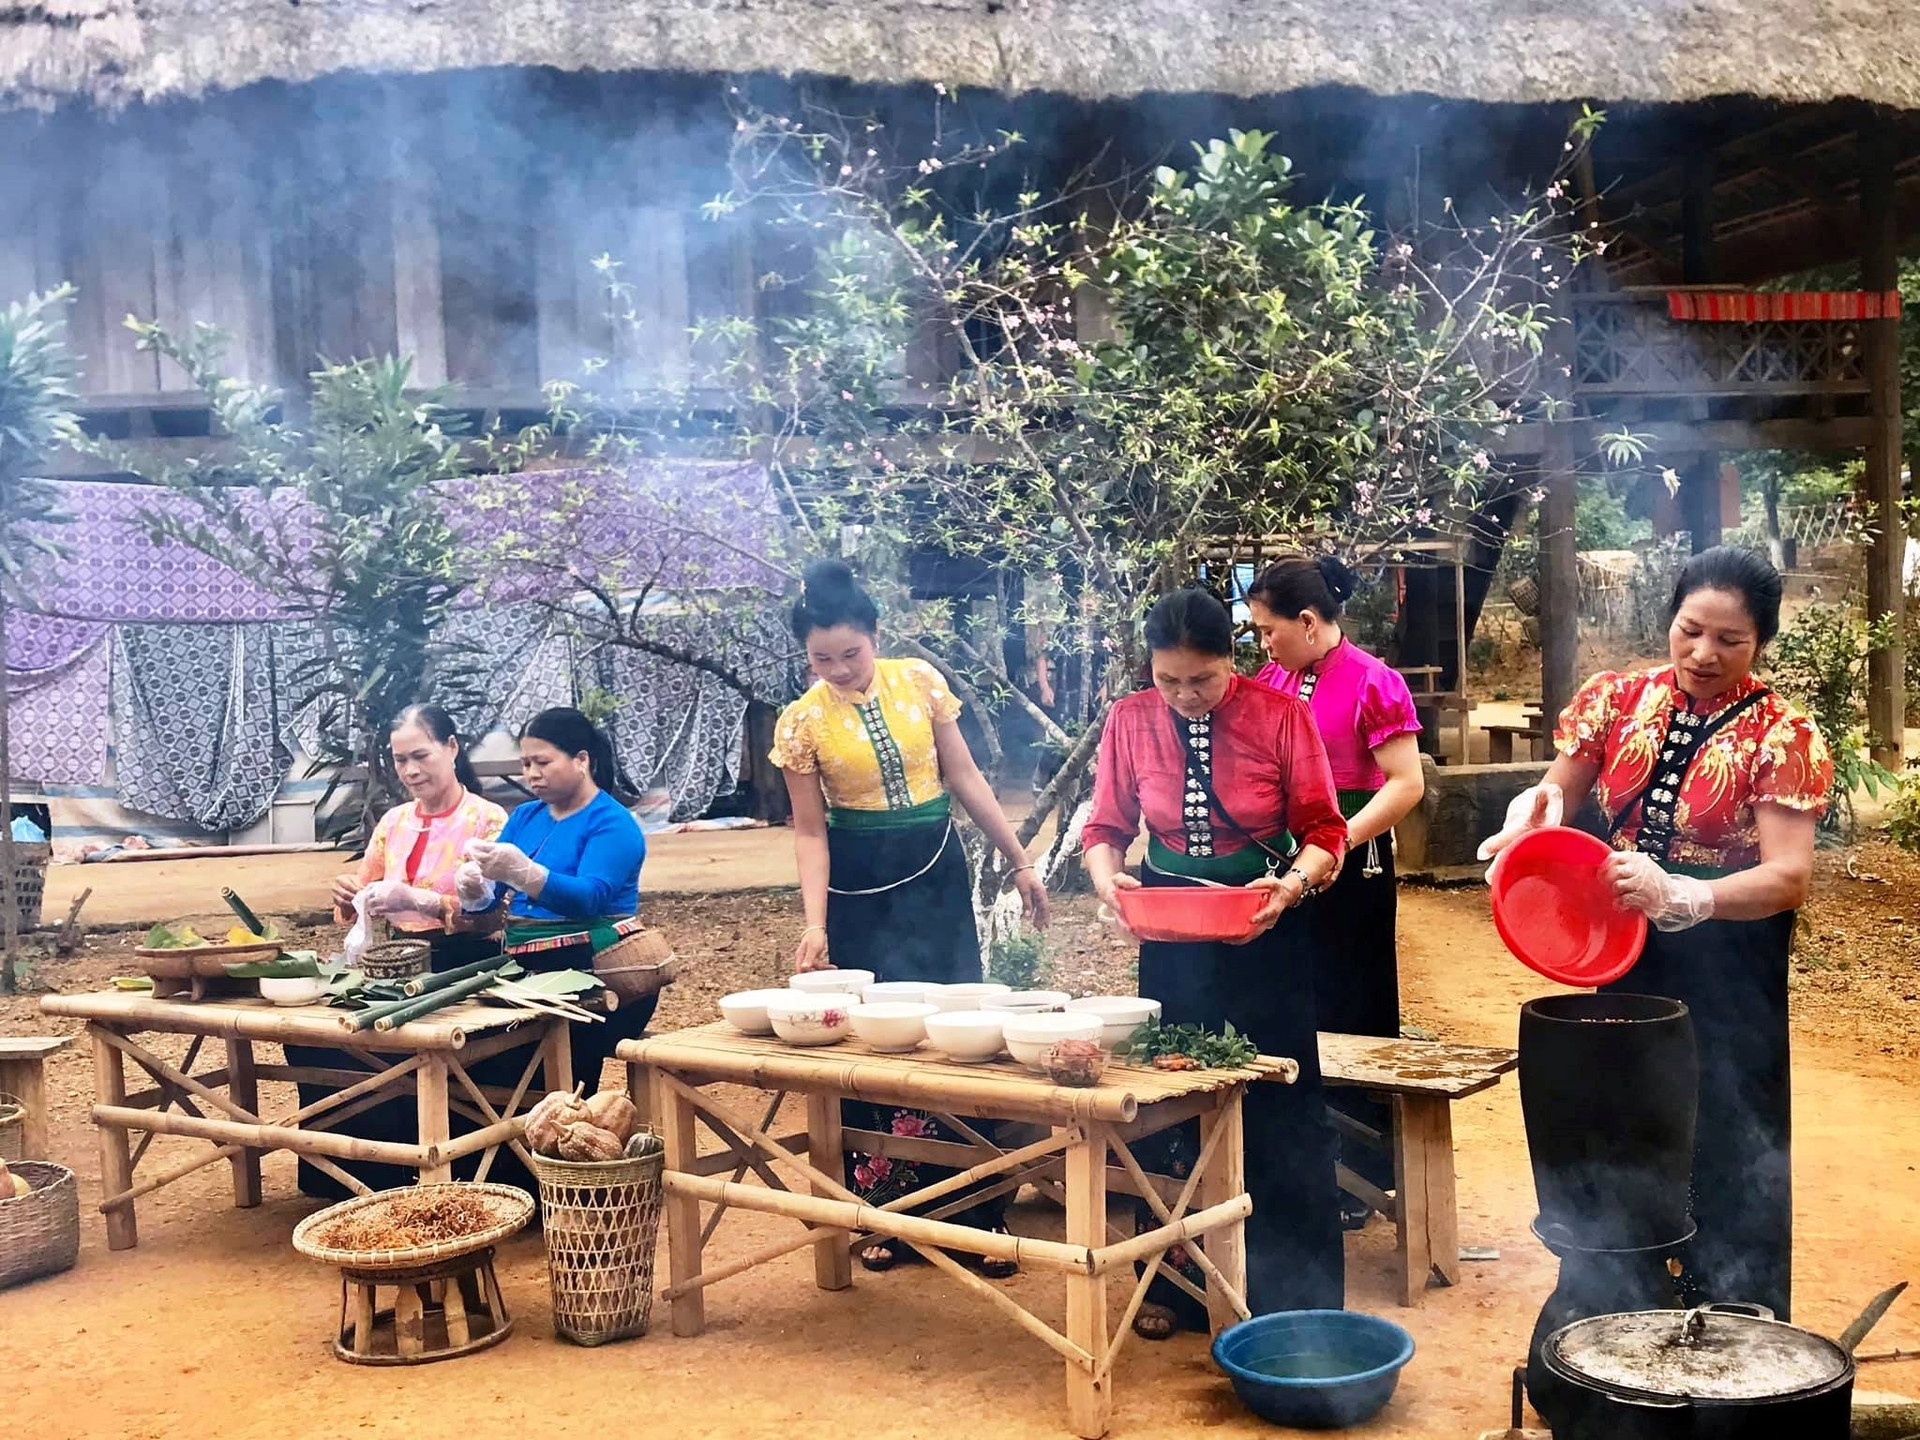 来越南各民族文化旅游村探索民族美食。